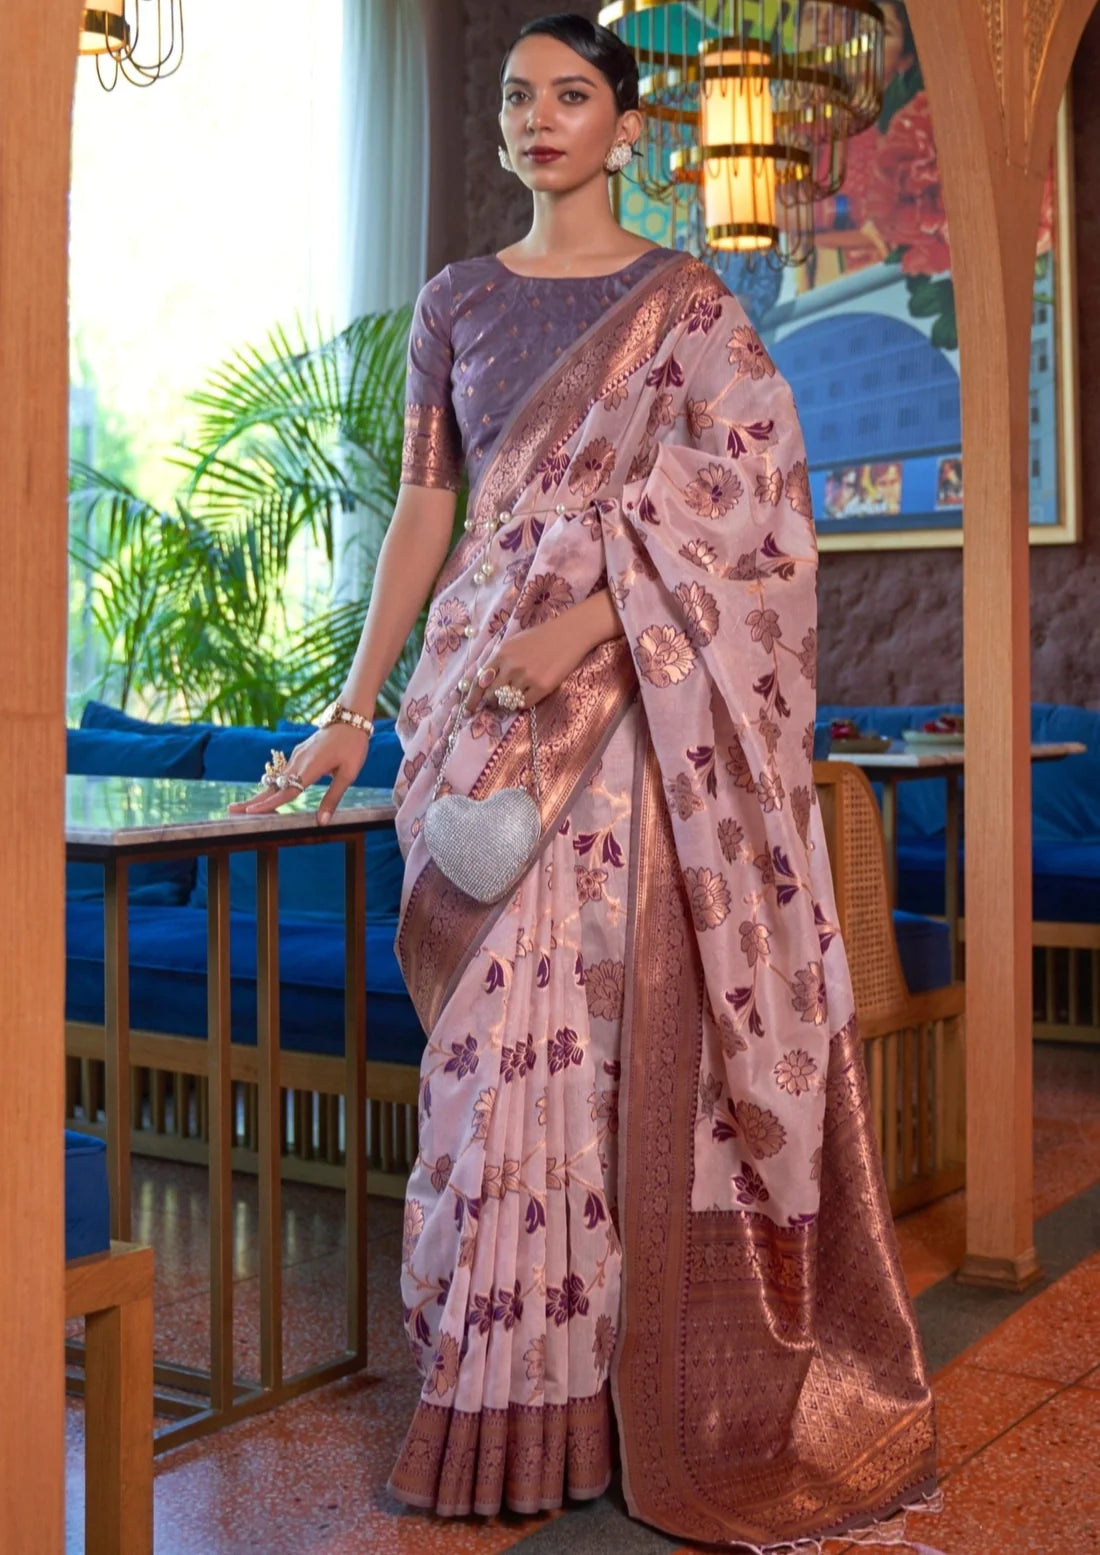 Bride in pure banarasi organza handloom saree in lilac purple color.